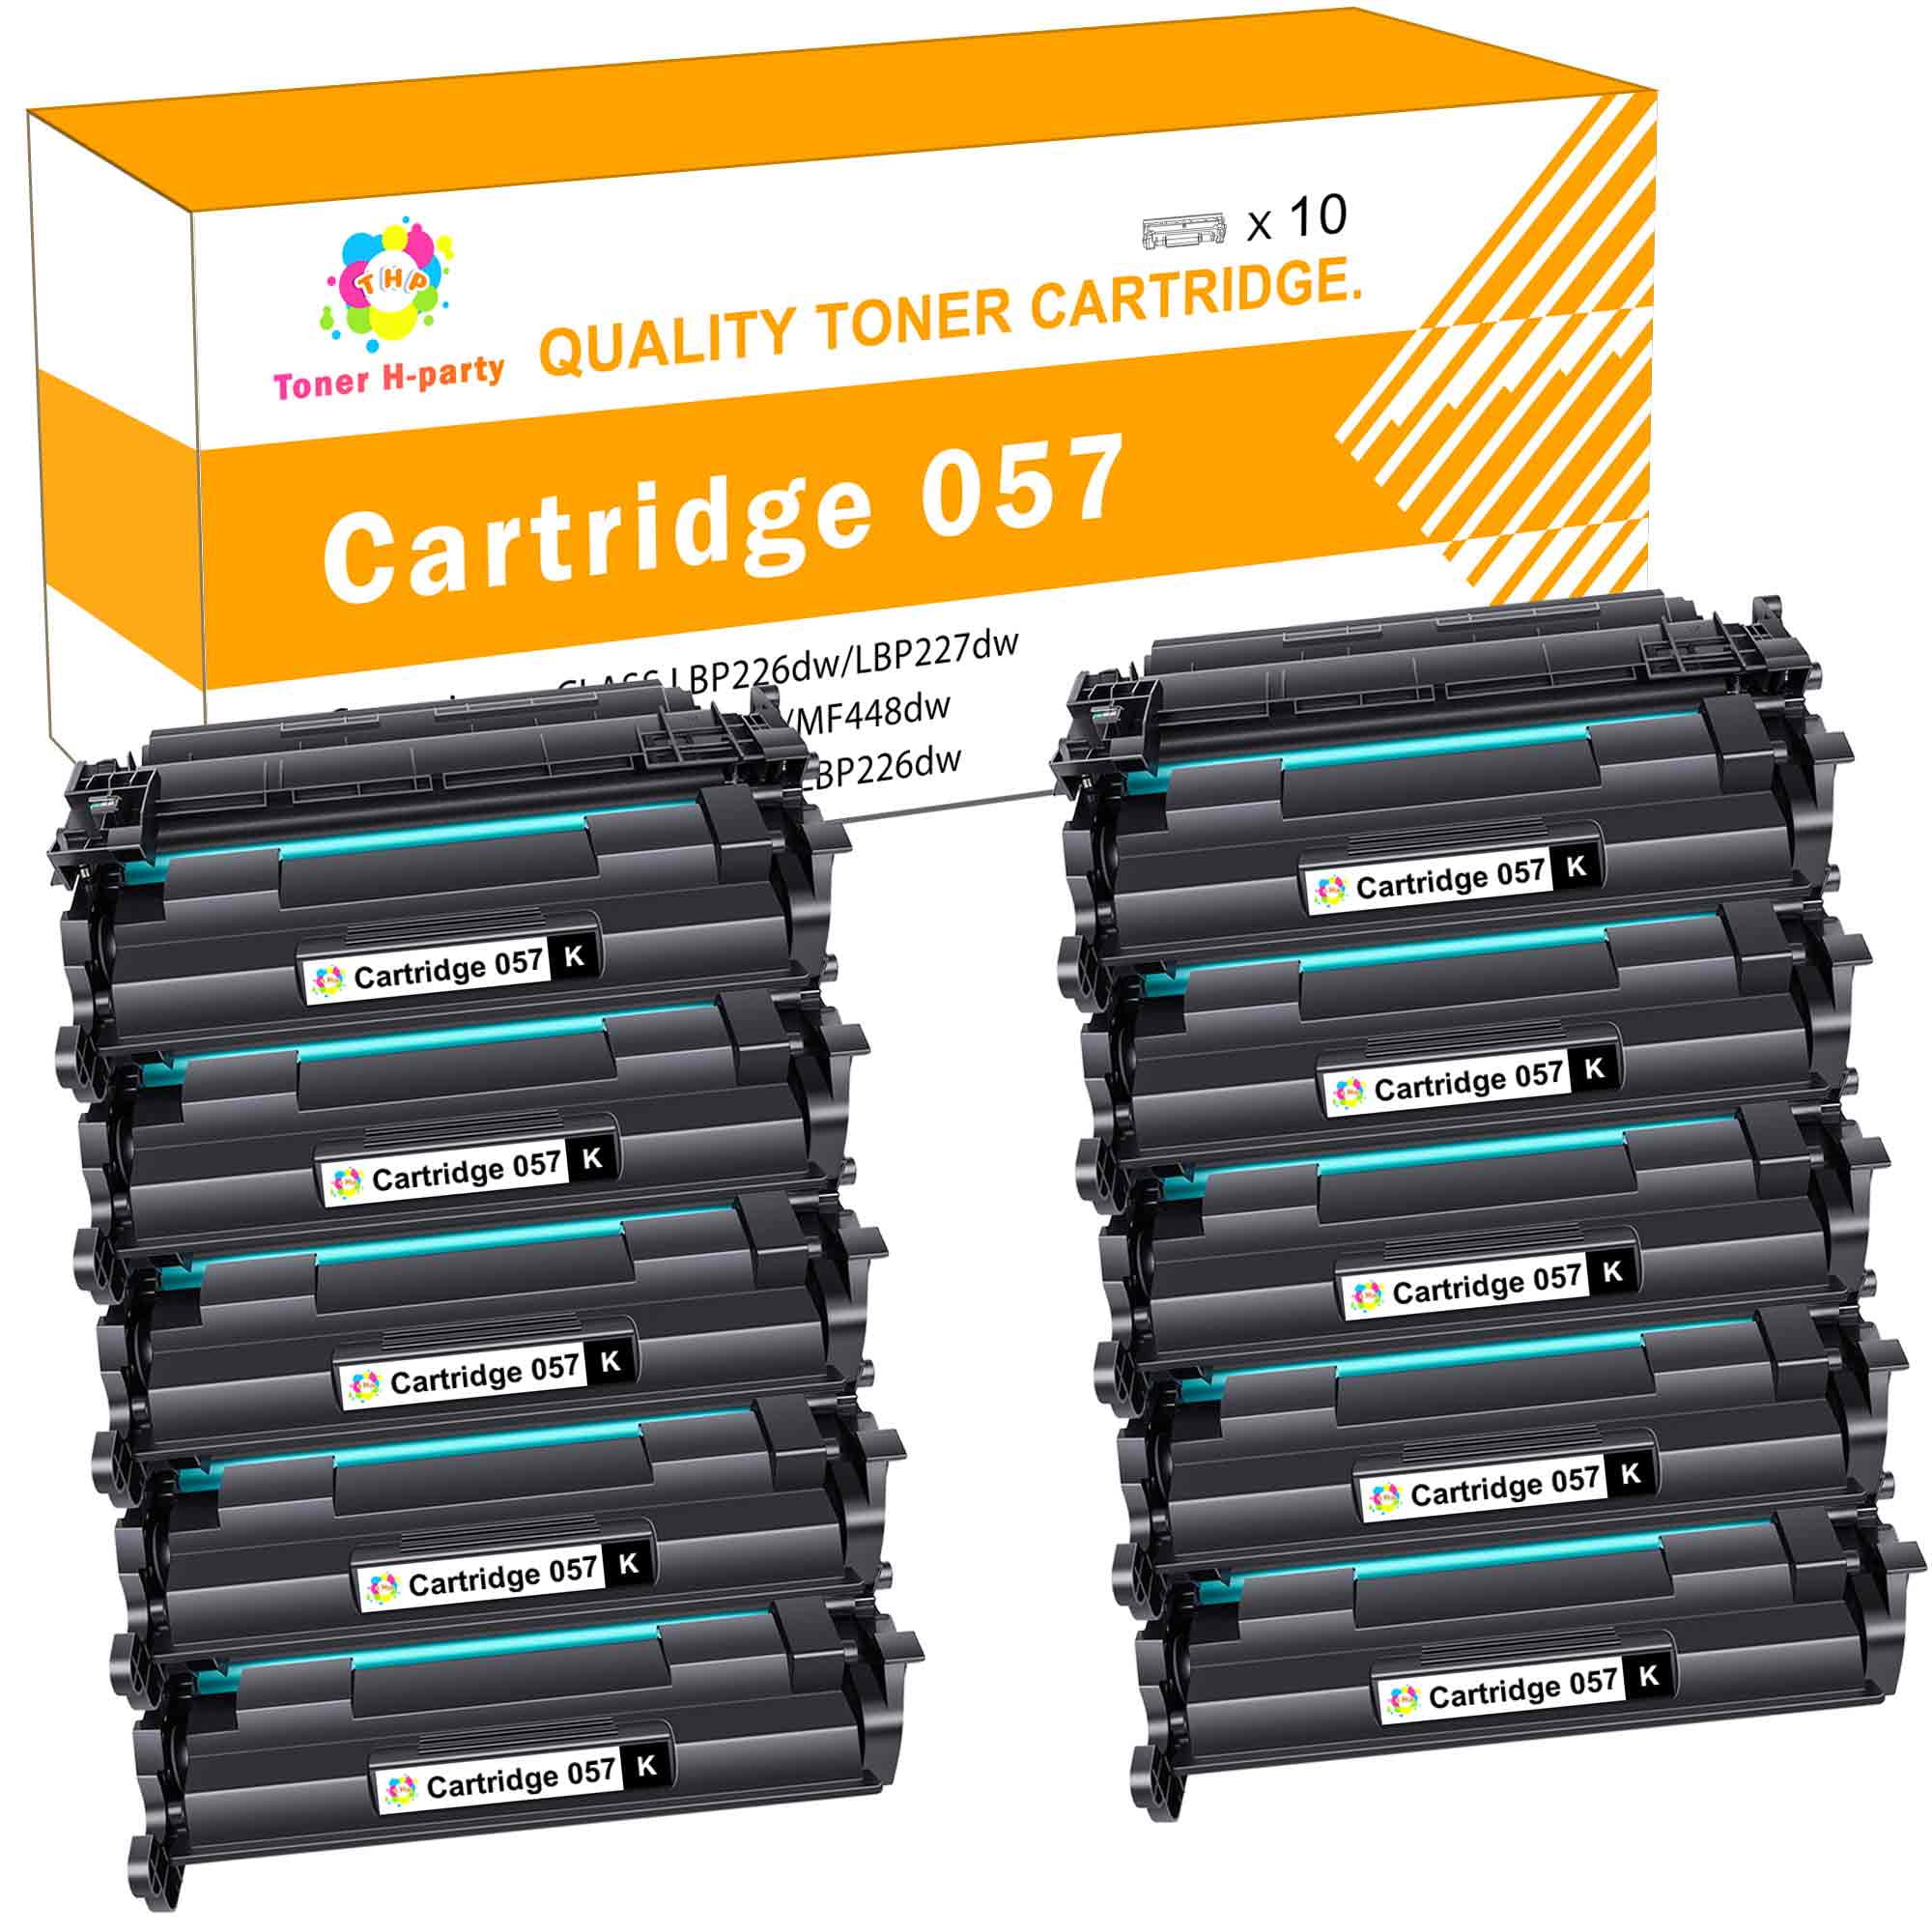 Toner H-Party Compatible Toner Cartridge with Chip for Canon 057 CRG-057  3009C001 ImageCLASS MF445dw MF448dw MF449dw LBP226dw LBP227dw Laser Printer  (Black, 10-Pack) 